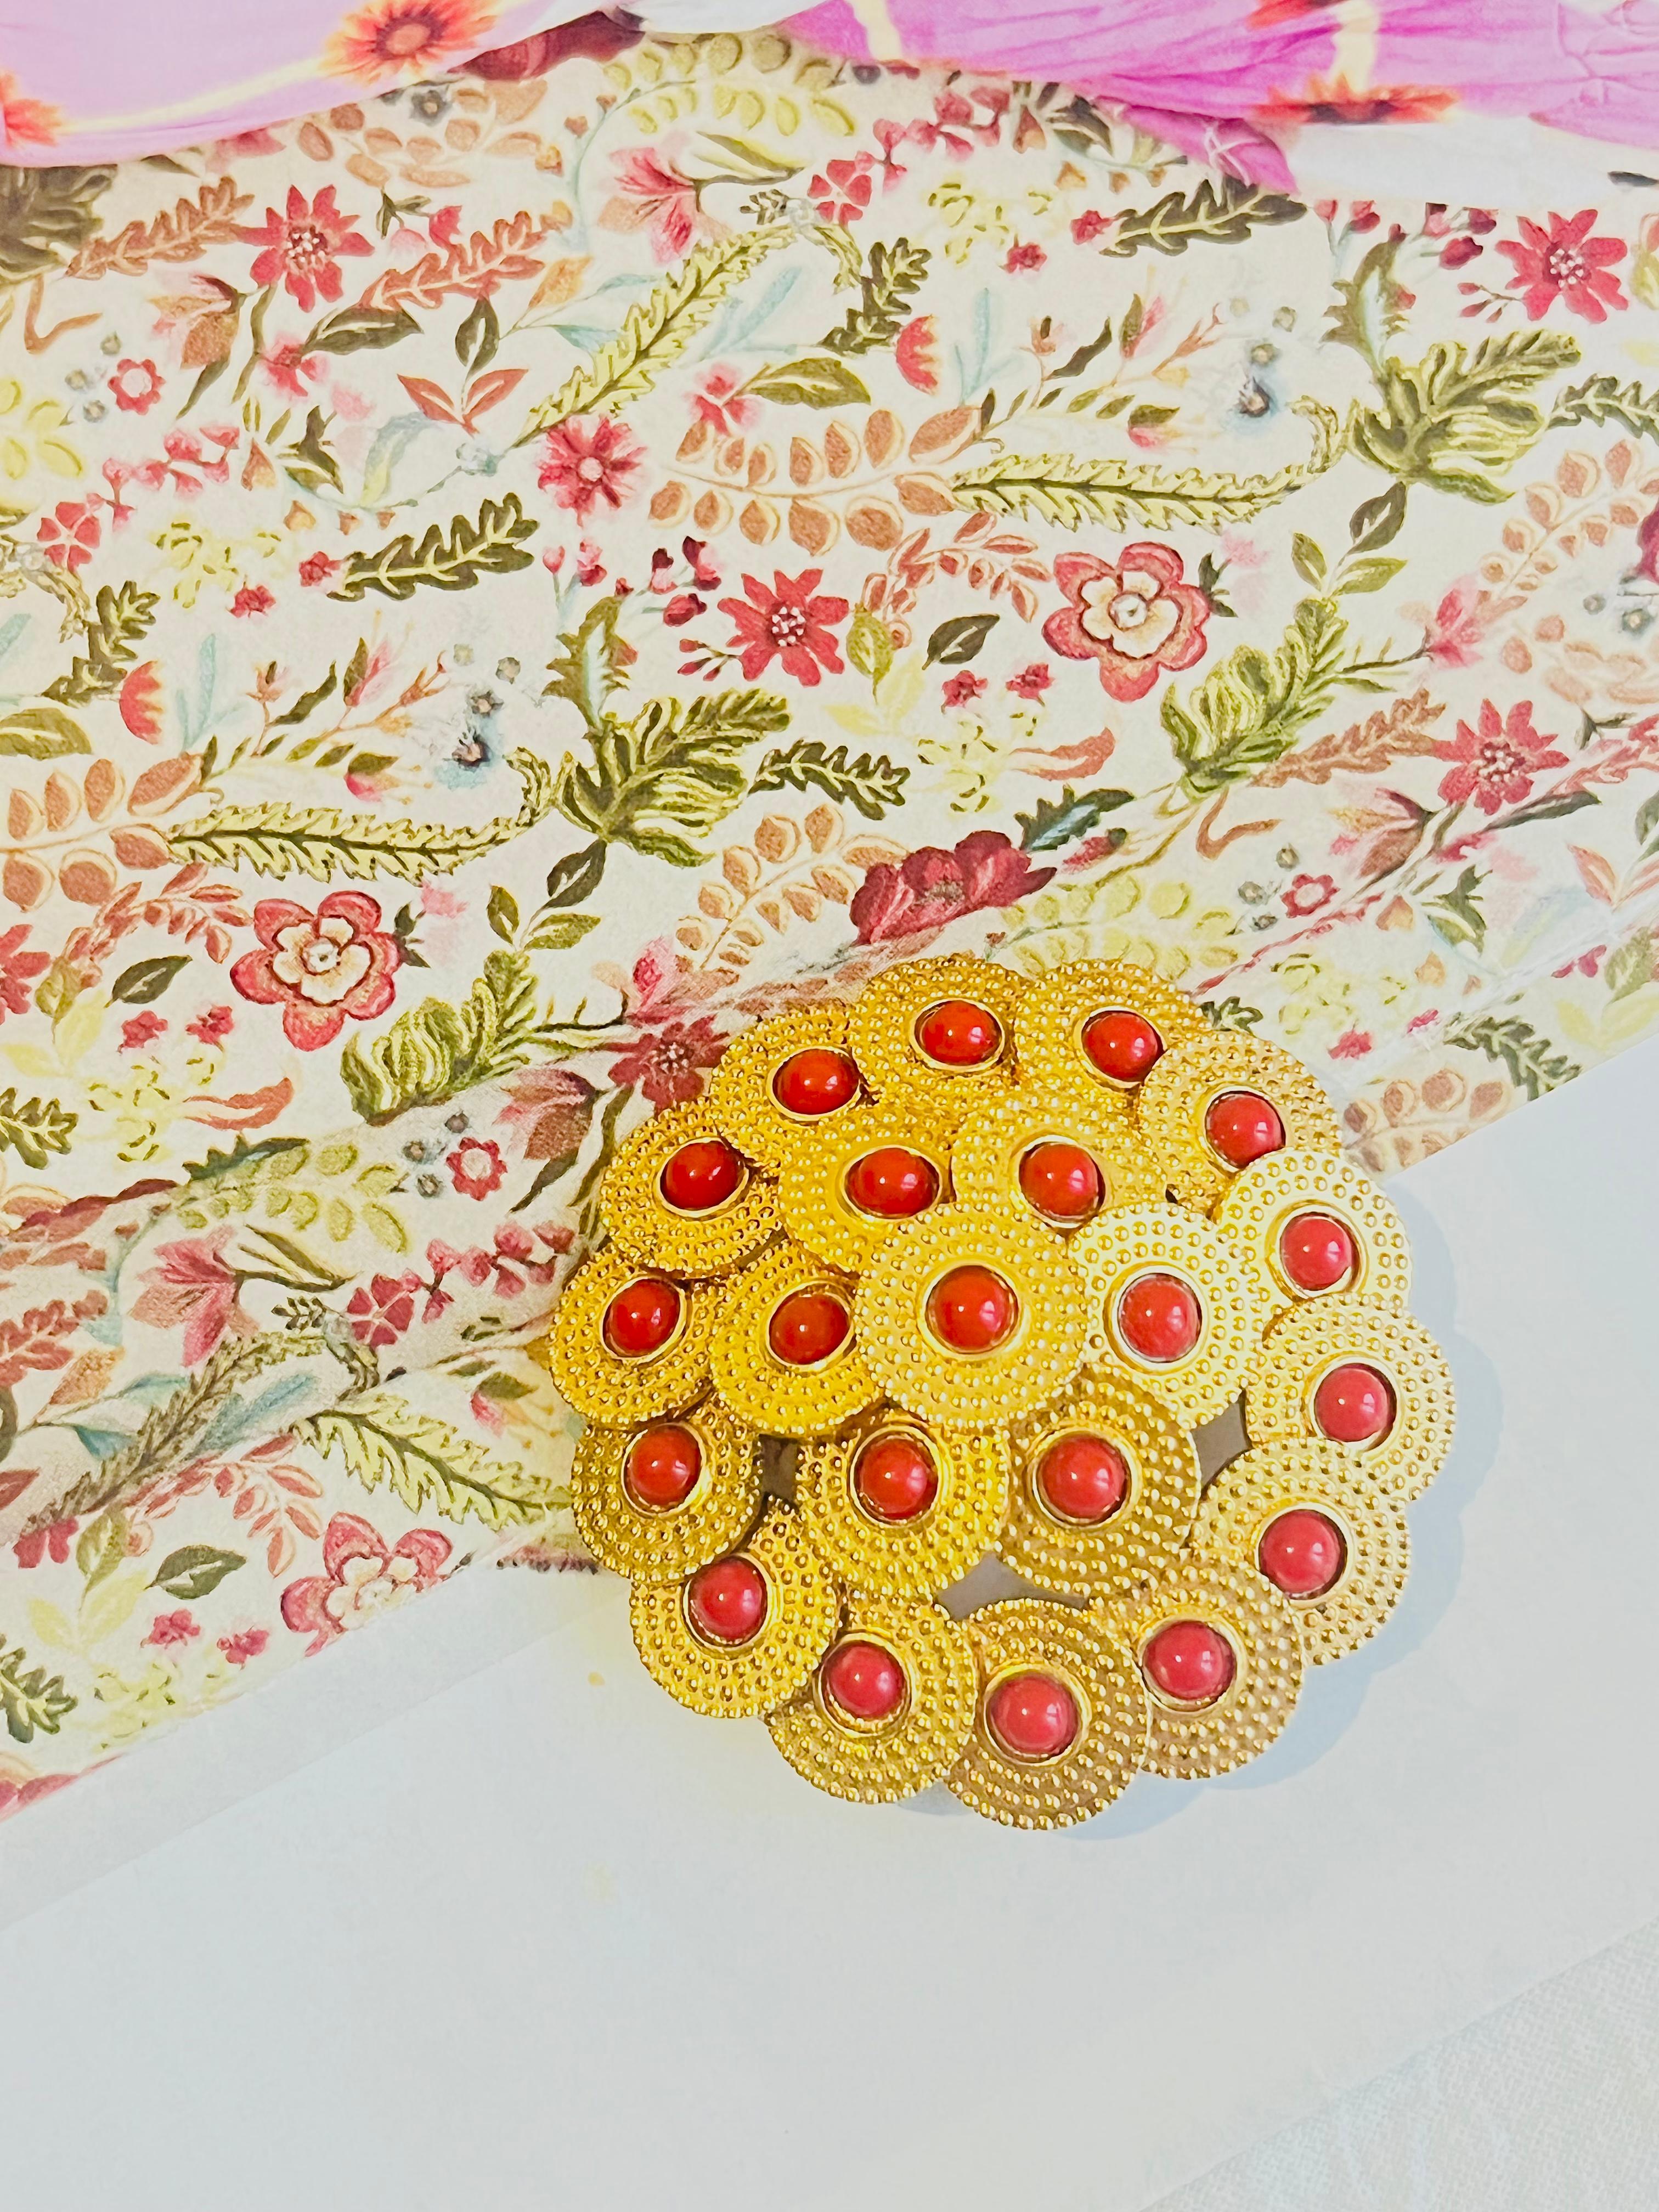 Christian Dior Vintage 1967 Scheibe Kreis rote Perlen Kugeln durchbrochene gewölbte Brosche, vergoldet

Sehr guter Zustand. Nur Farbverlust am Stift. Selten zu finden.

Ein Unikat. Diese stilisierte Brosche ist vergoldet und stammt aus dem Jahr